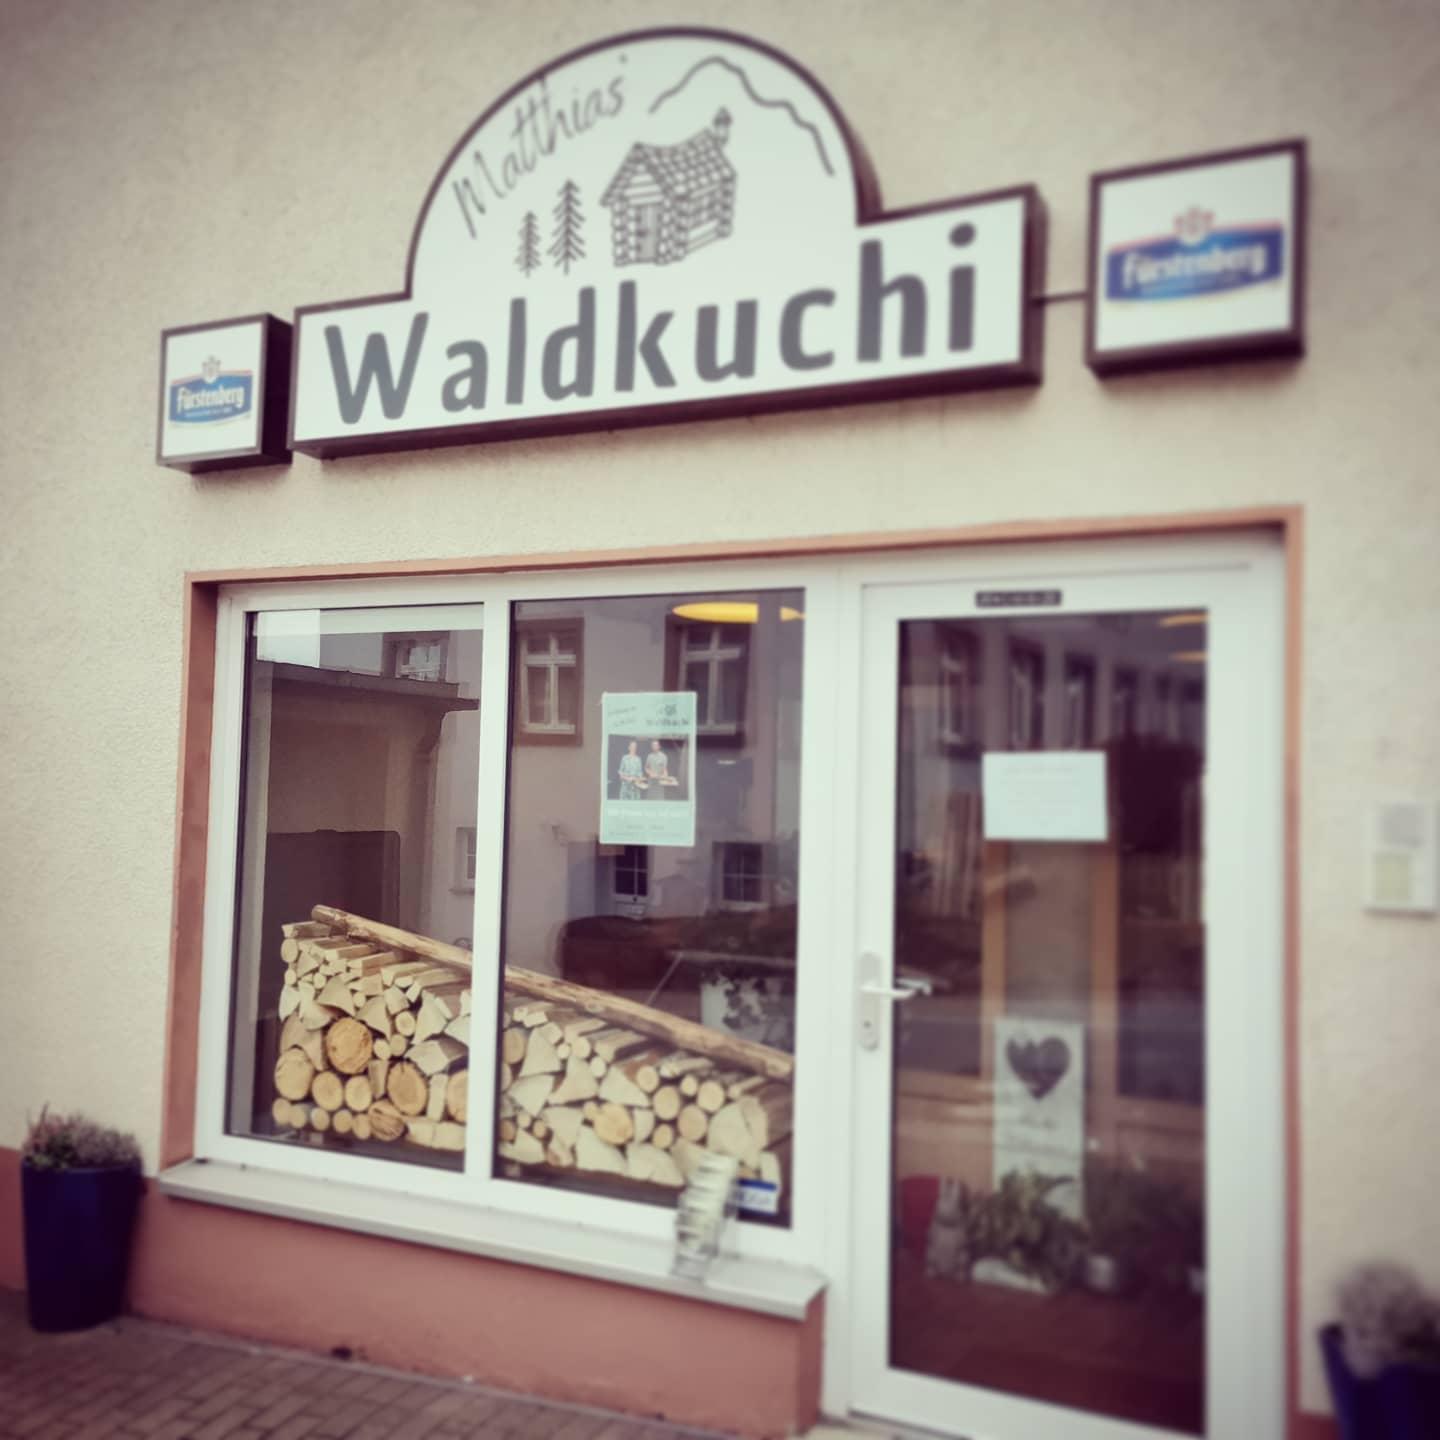 Restaurant "Waldkuchi" in Sankt Märgen